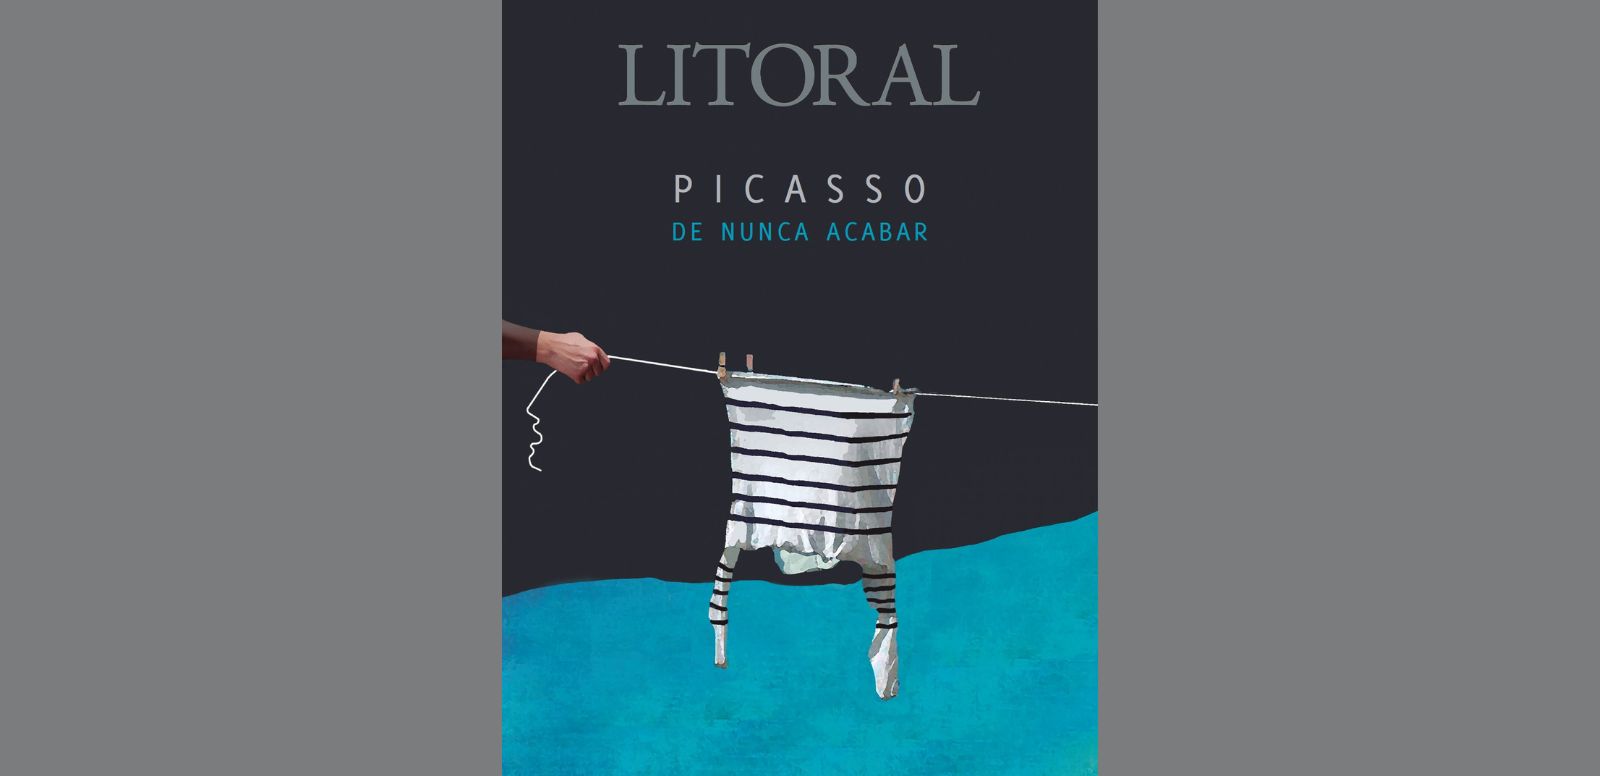 Portada #276 de la revista Litoral "Picasso de nunca acabar"